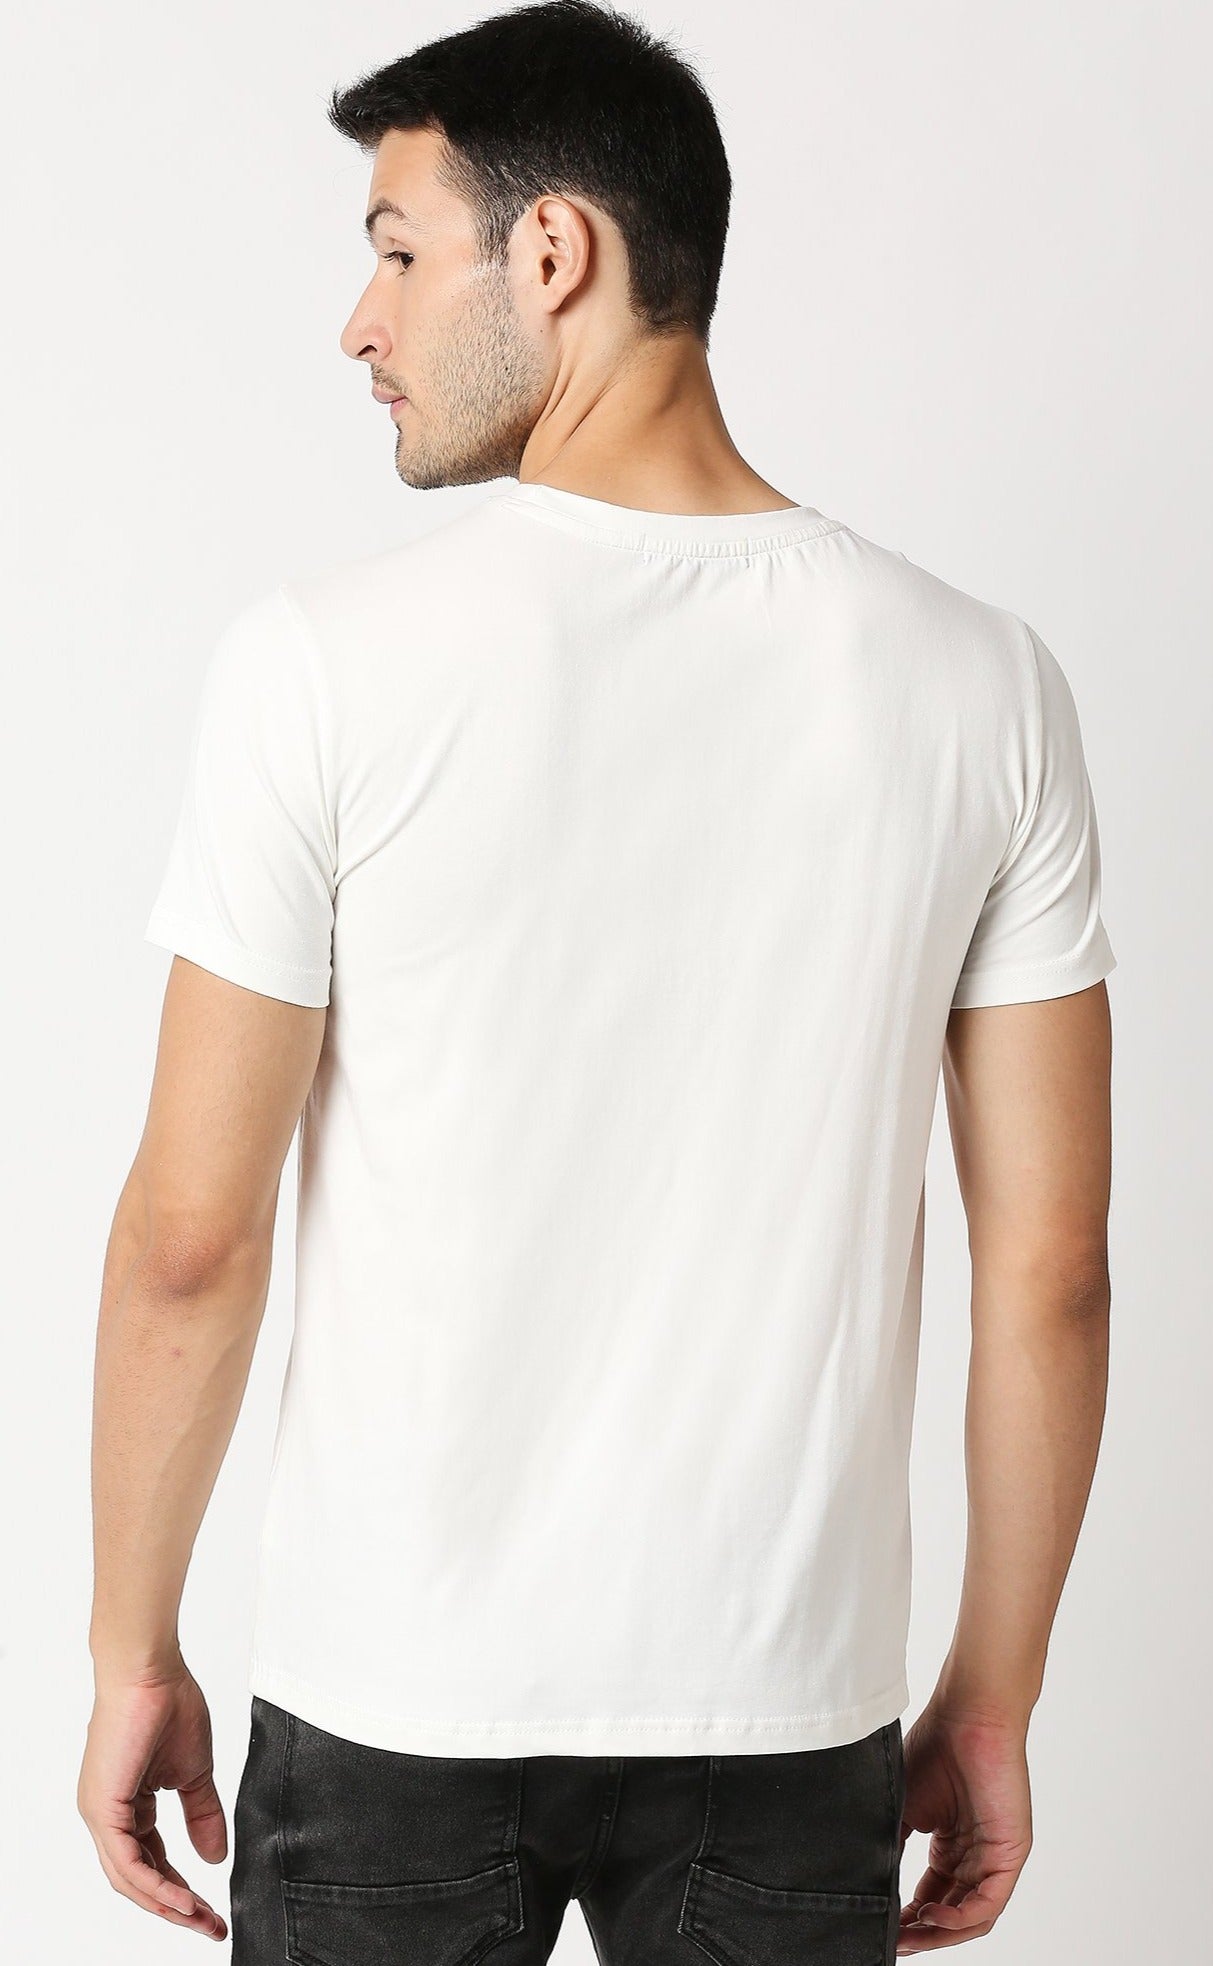 Fostino Auckland White Round Neck T-Shirt - Fostino - T-Shirts